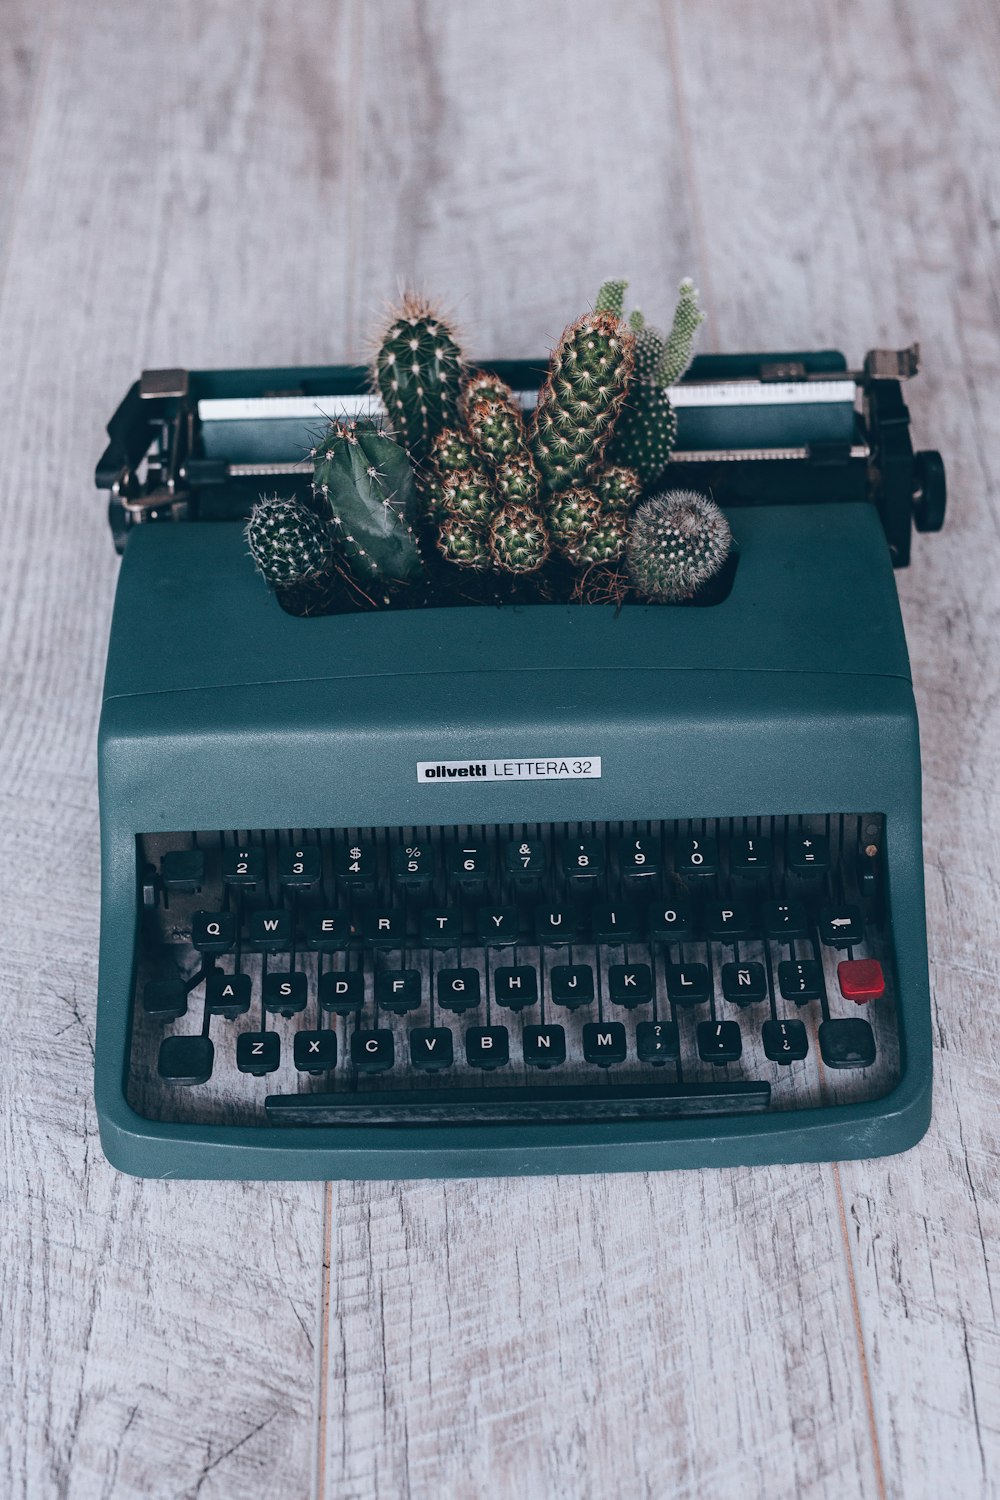 schwarz-grüne Olympia-Schreibmaschine und grüne Kaktuspflanze